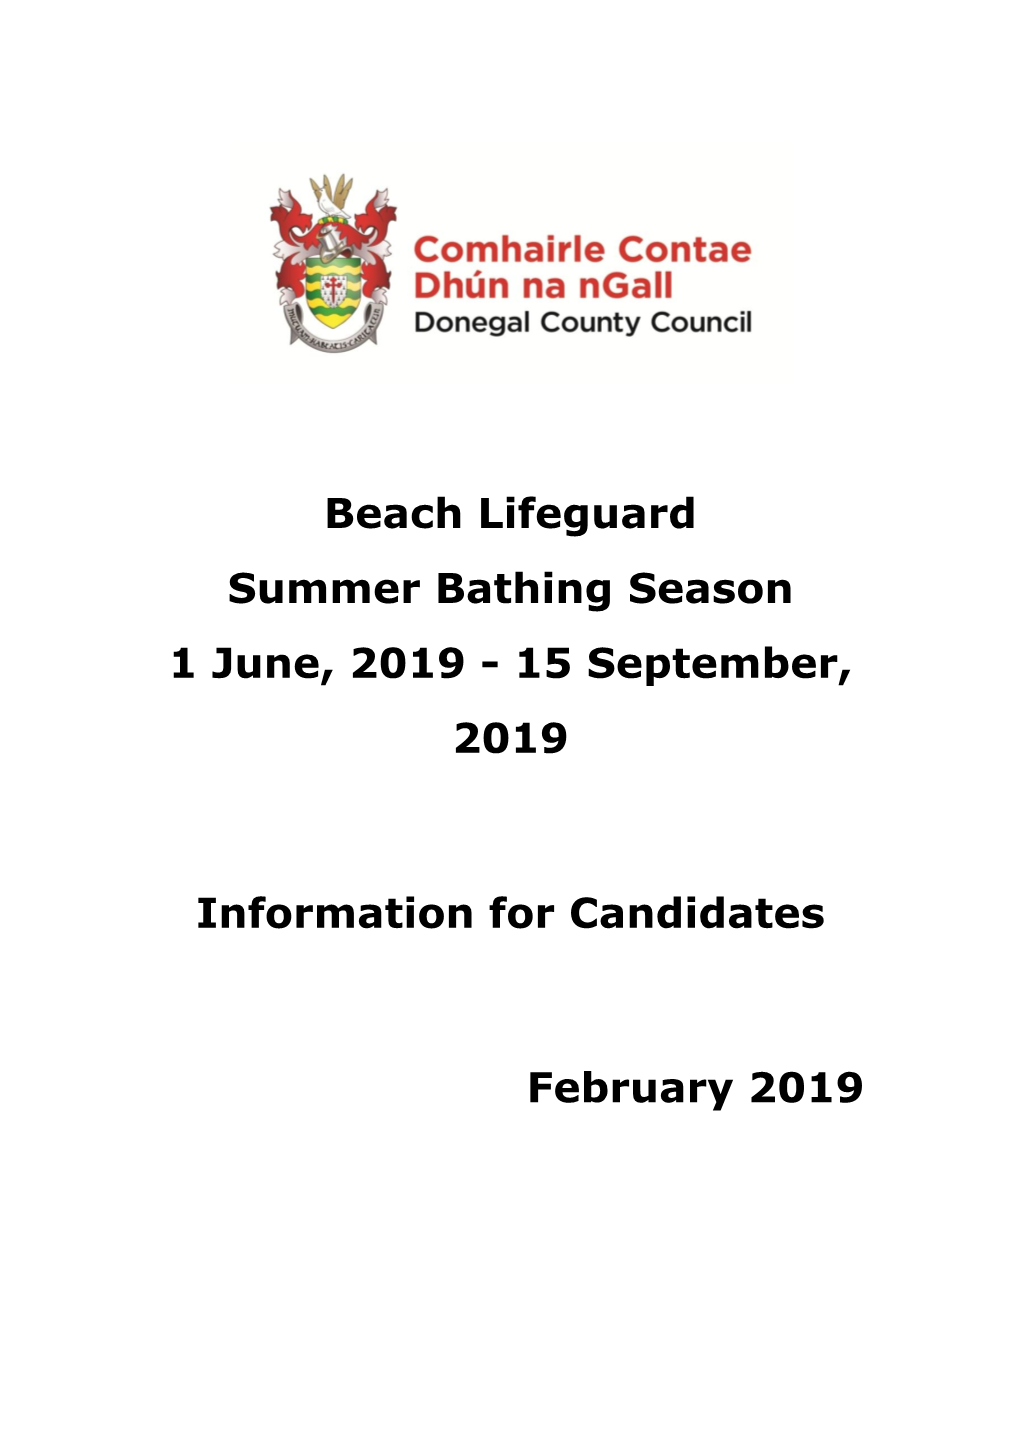 Beach Lifeguard Summer Bathing Season 1 June, 2019 - 15 September, 2019